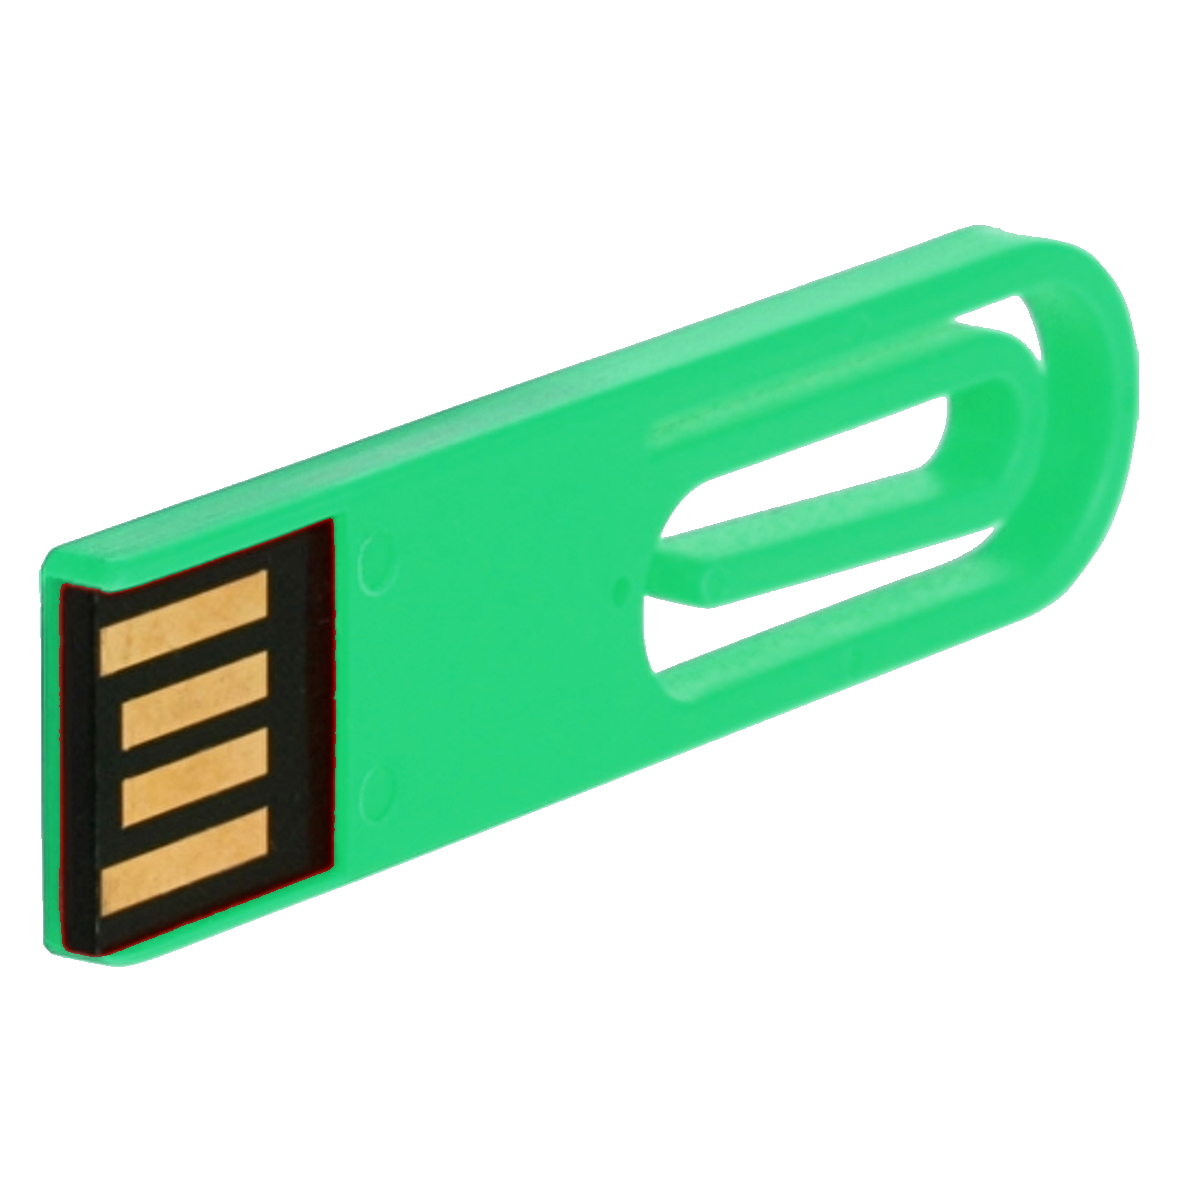 GERMANY USB GB) (Grün, 128 eCLIP ® USB-Stick